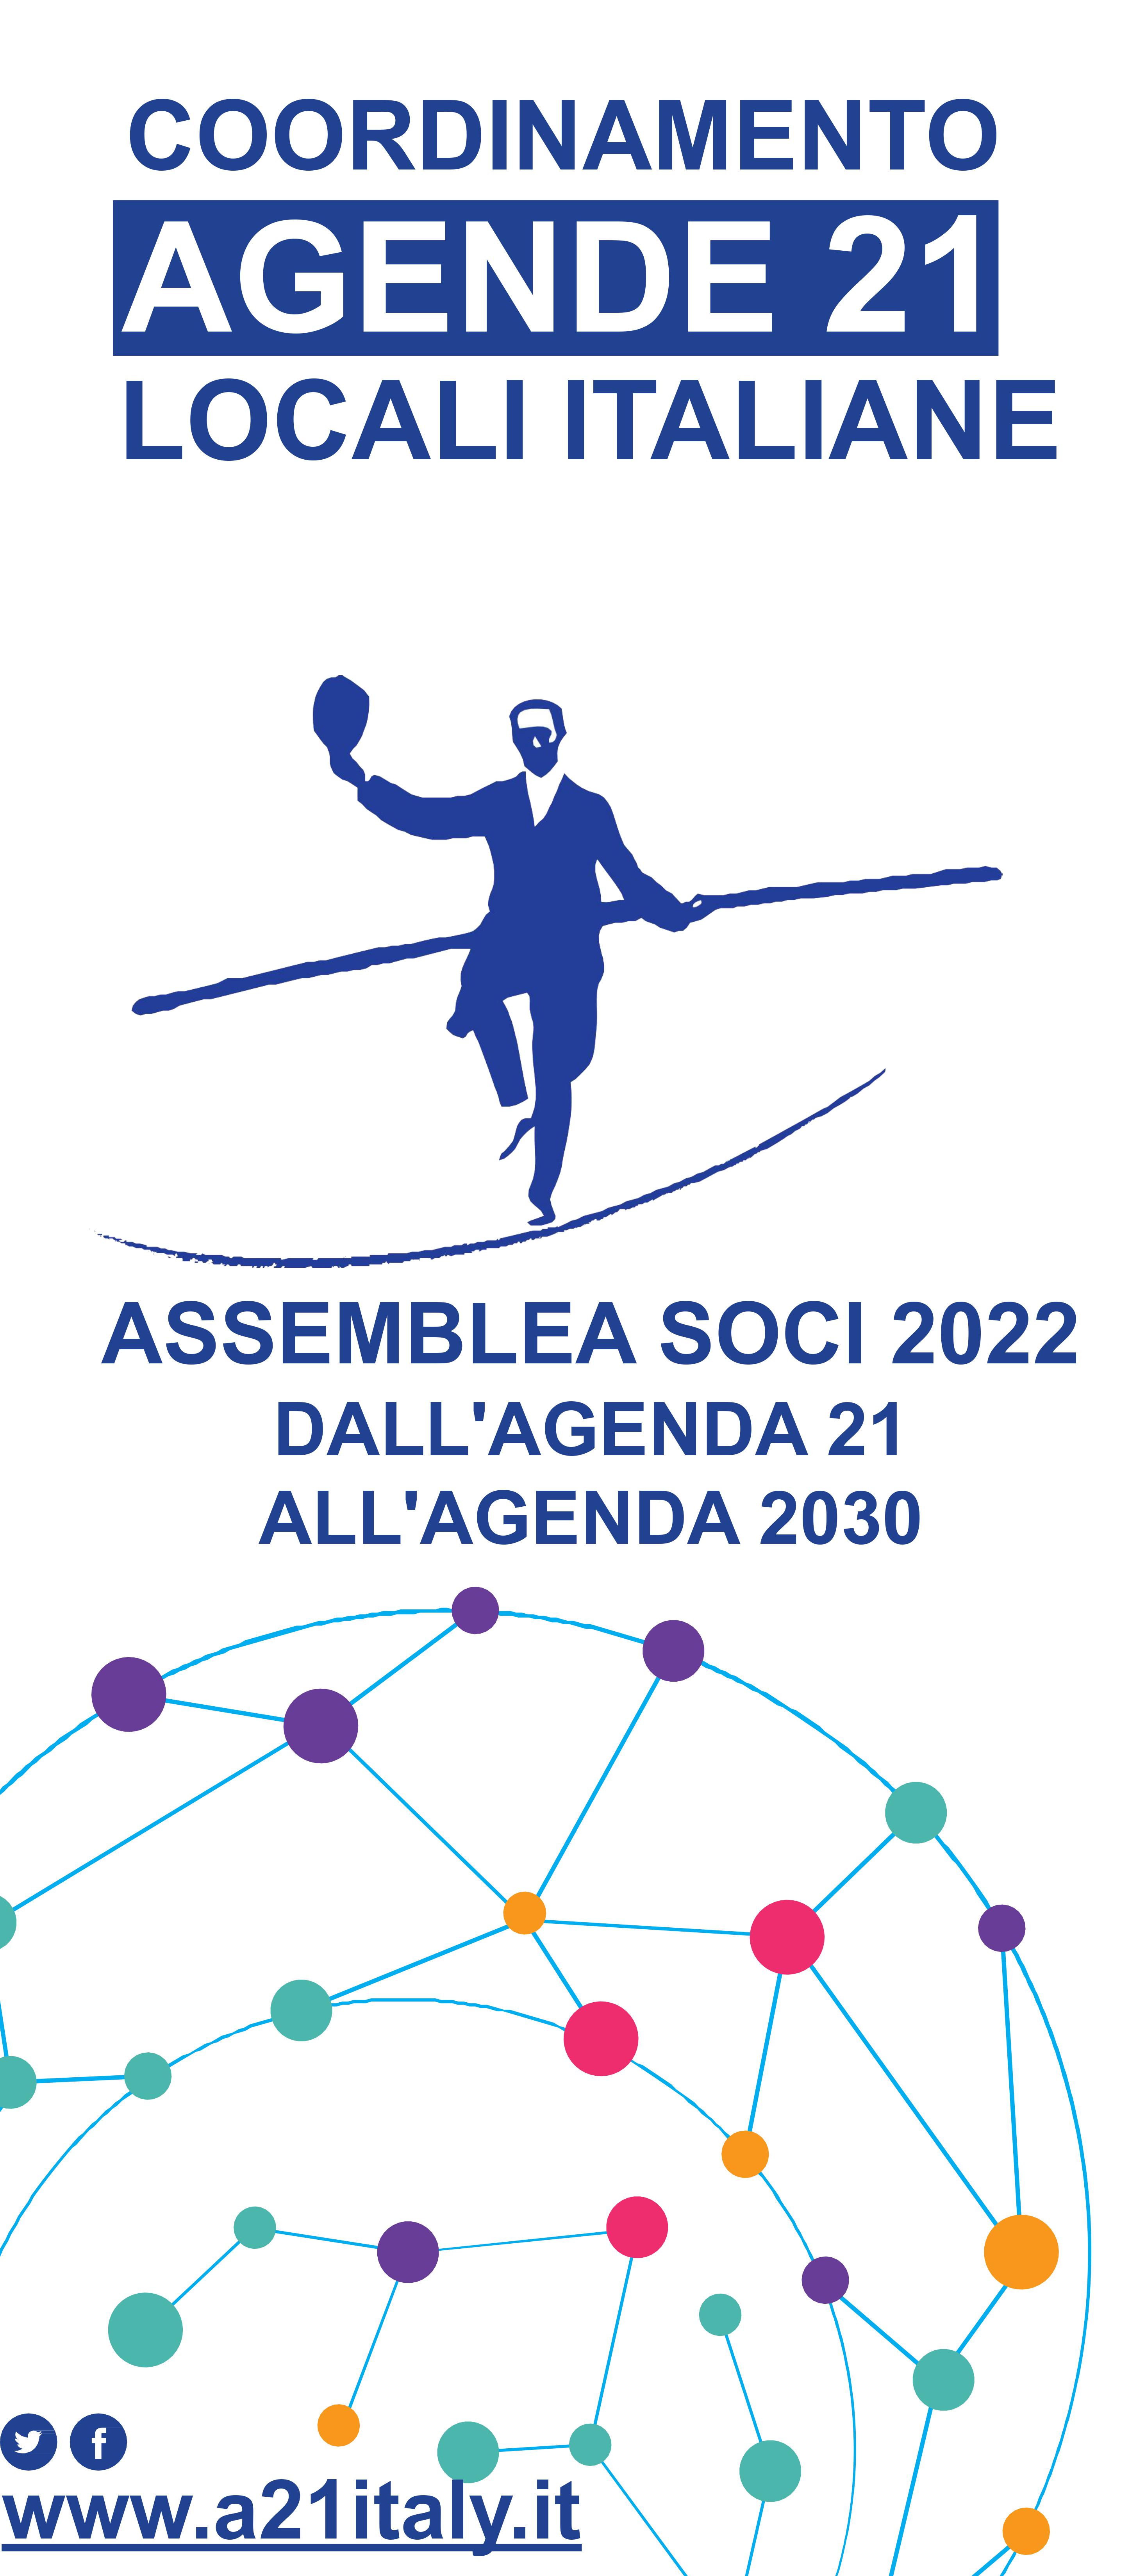 ASSEMBLEA SOCI DALL'AGENDA 21 ALL'AGENDA 2030.pptx